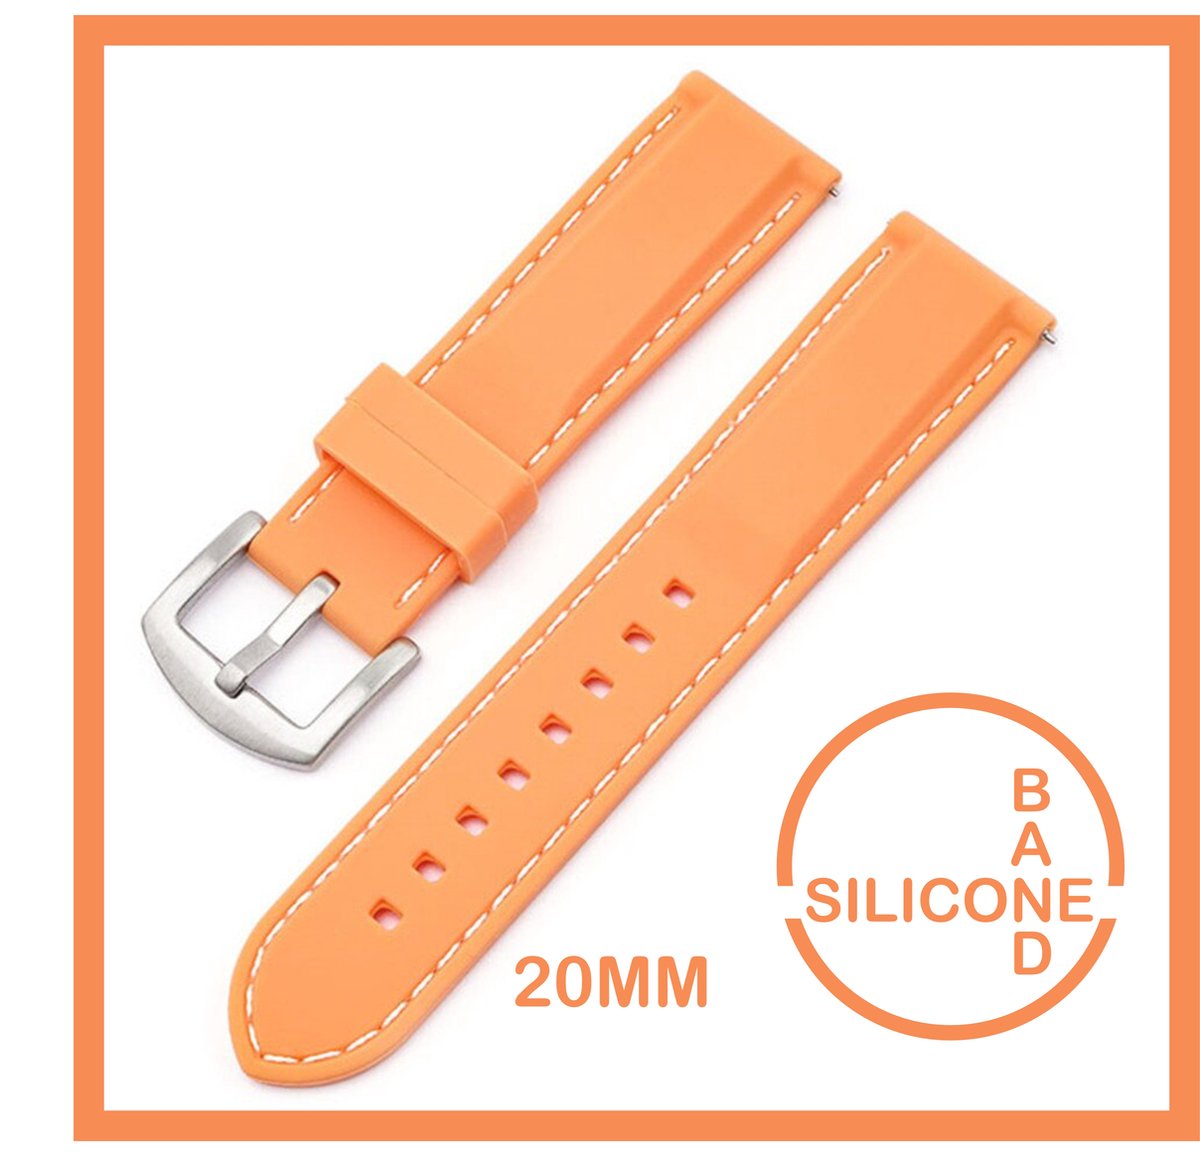 20mm Rubber Siliconen horlogeband kleur Zalm met witte stiksels passend op o.a Casio Seiko Citizen en alle andere merken - 20 mm Bandje - blauw - Horlogebandje horlogeband